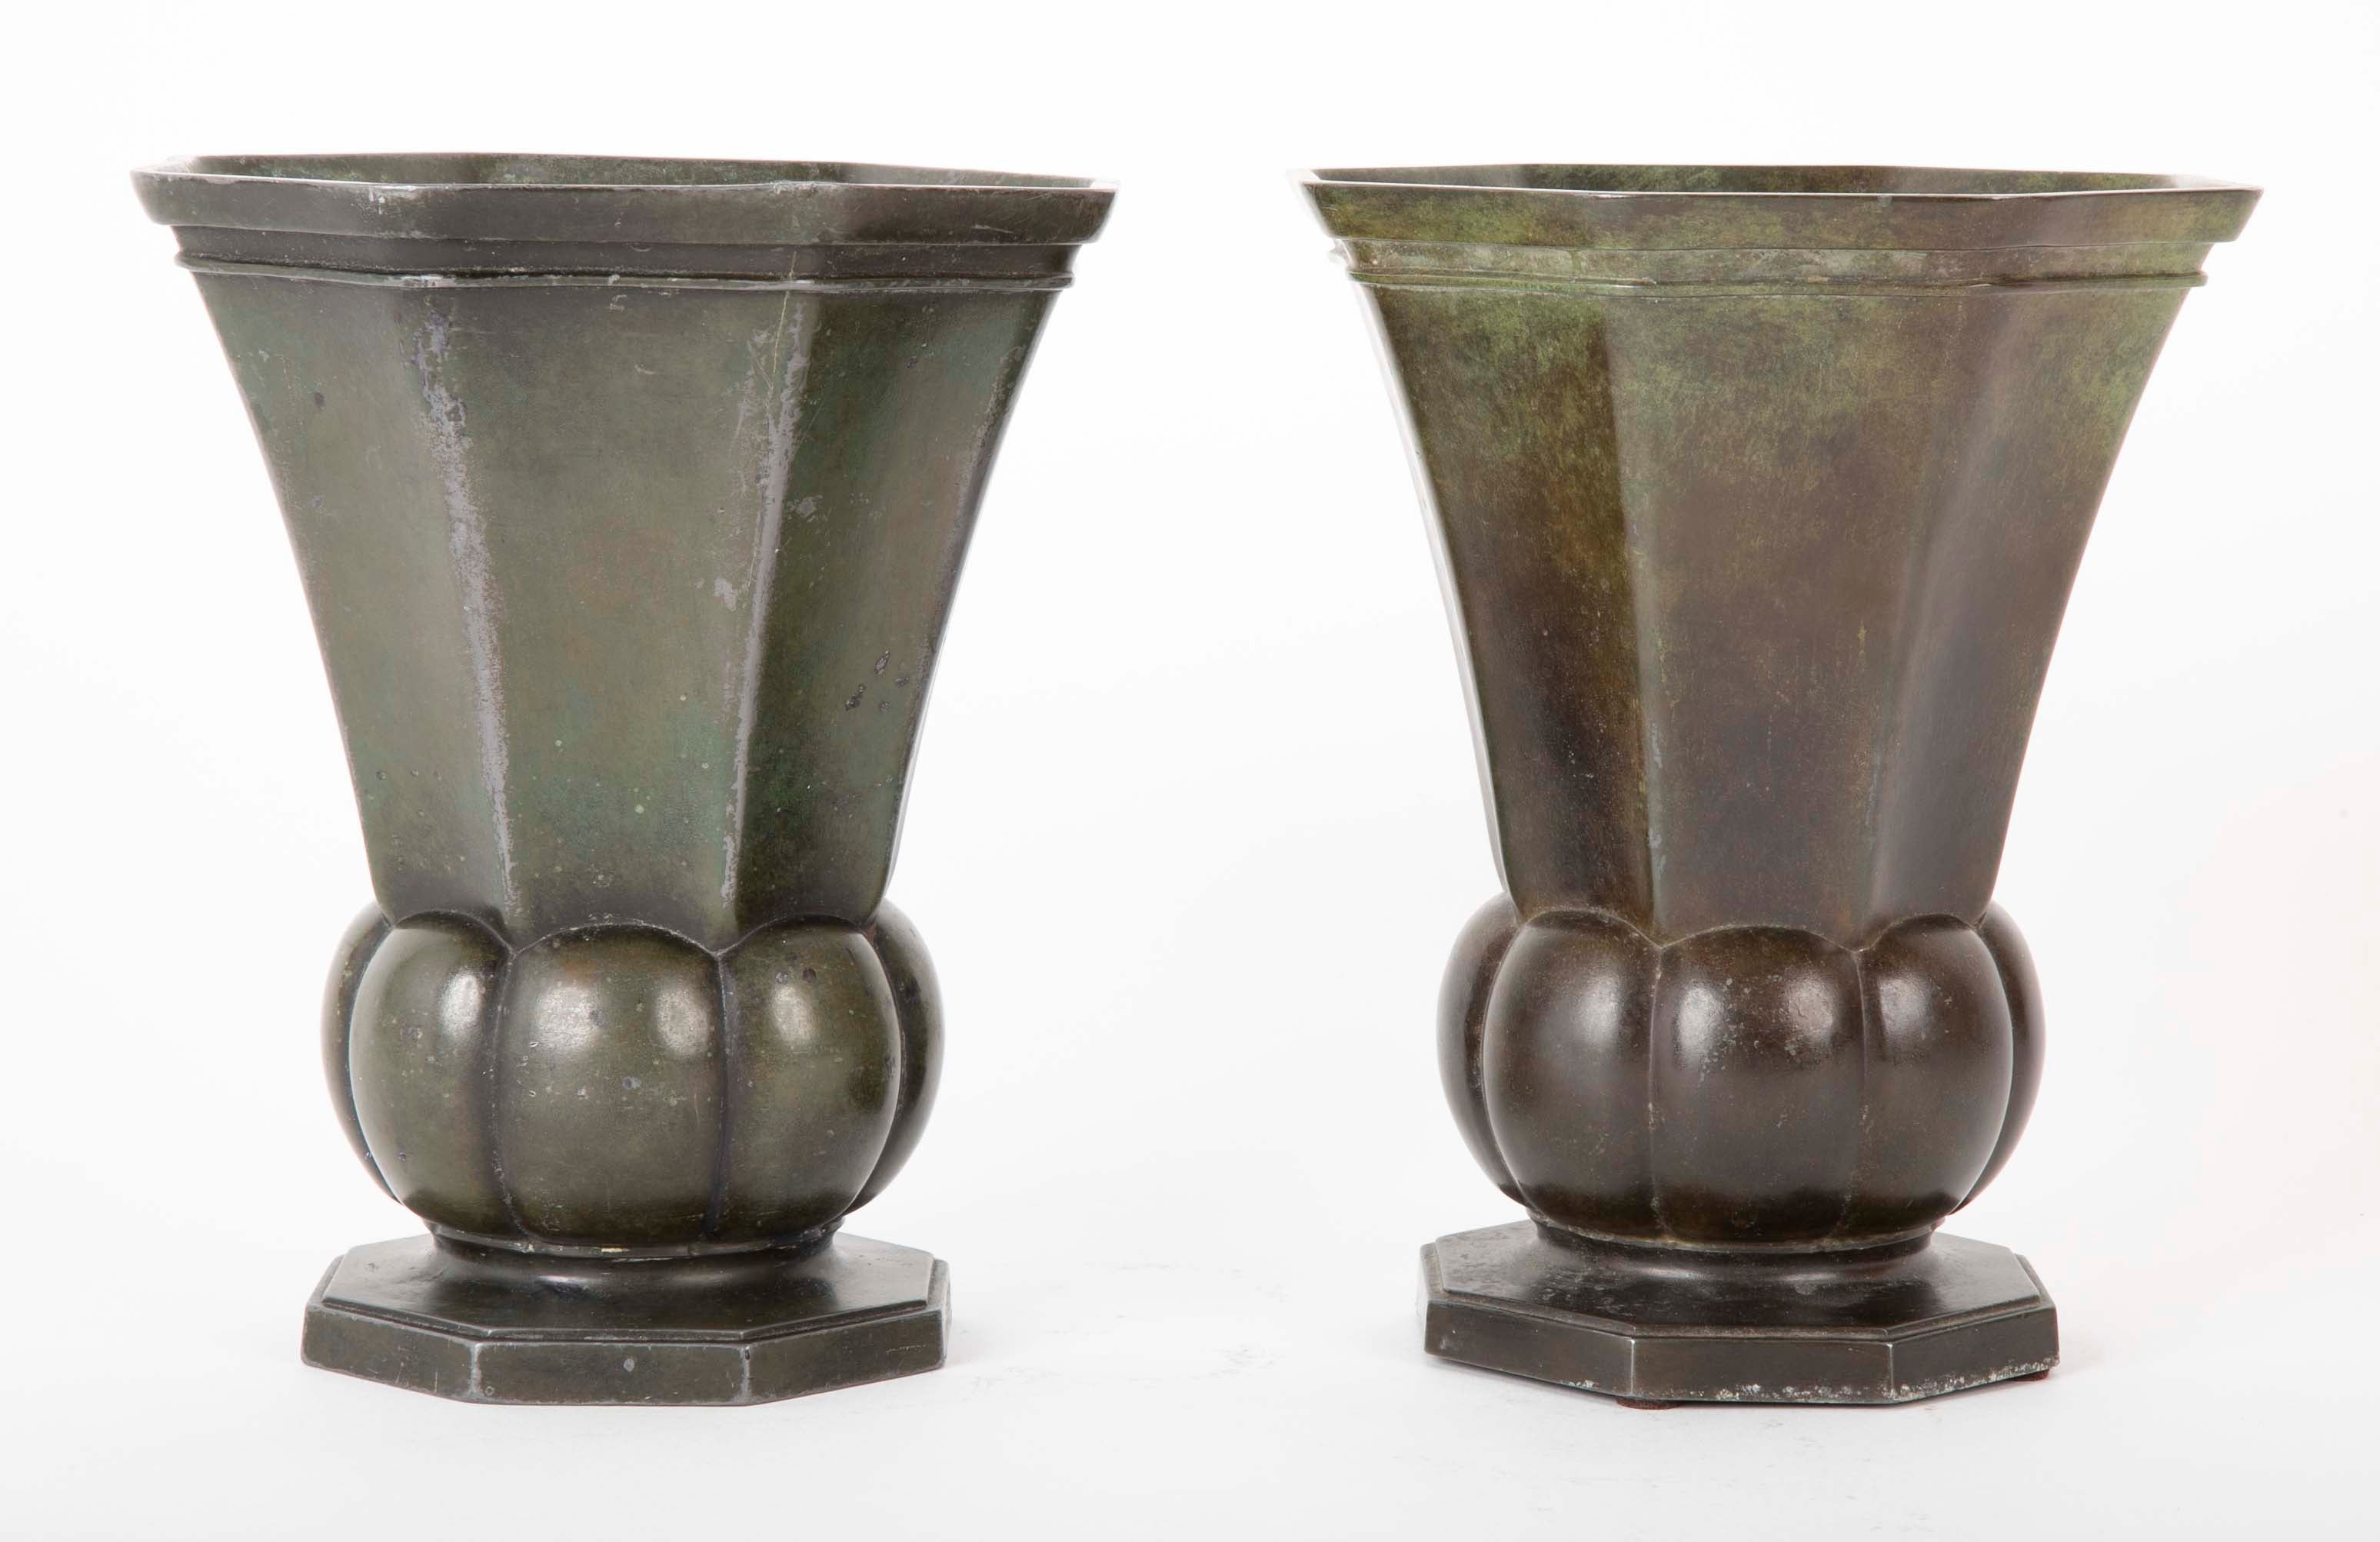 SOLD 11/2/21 Pair of Octagonal Disko Metal Vases by Just Andersen